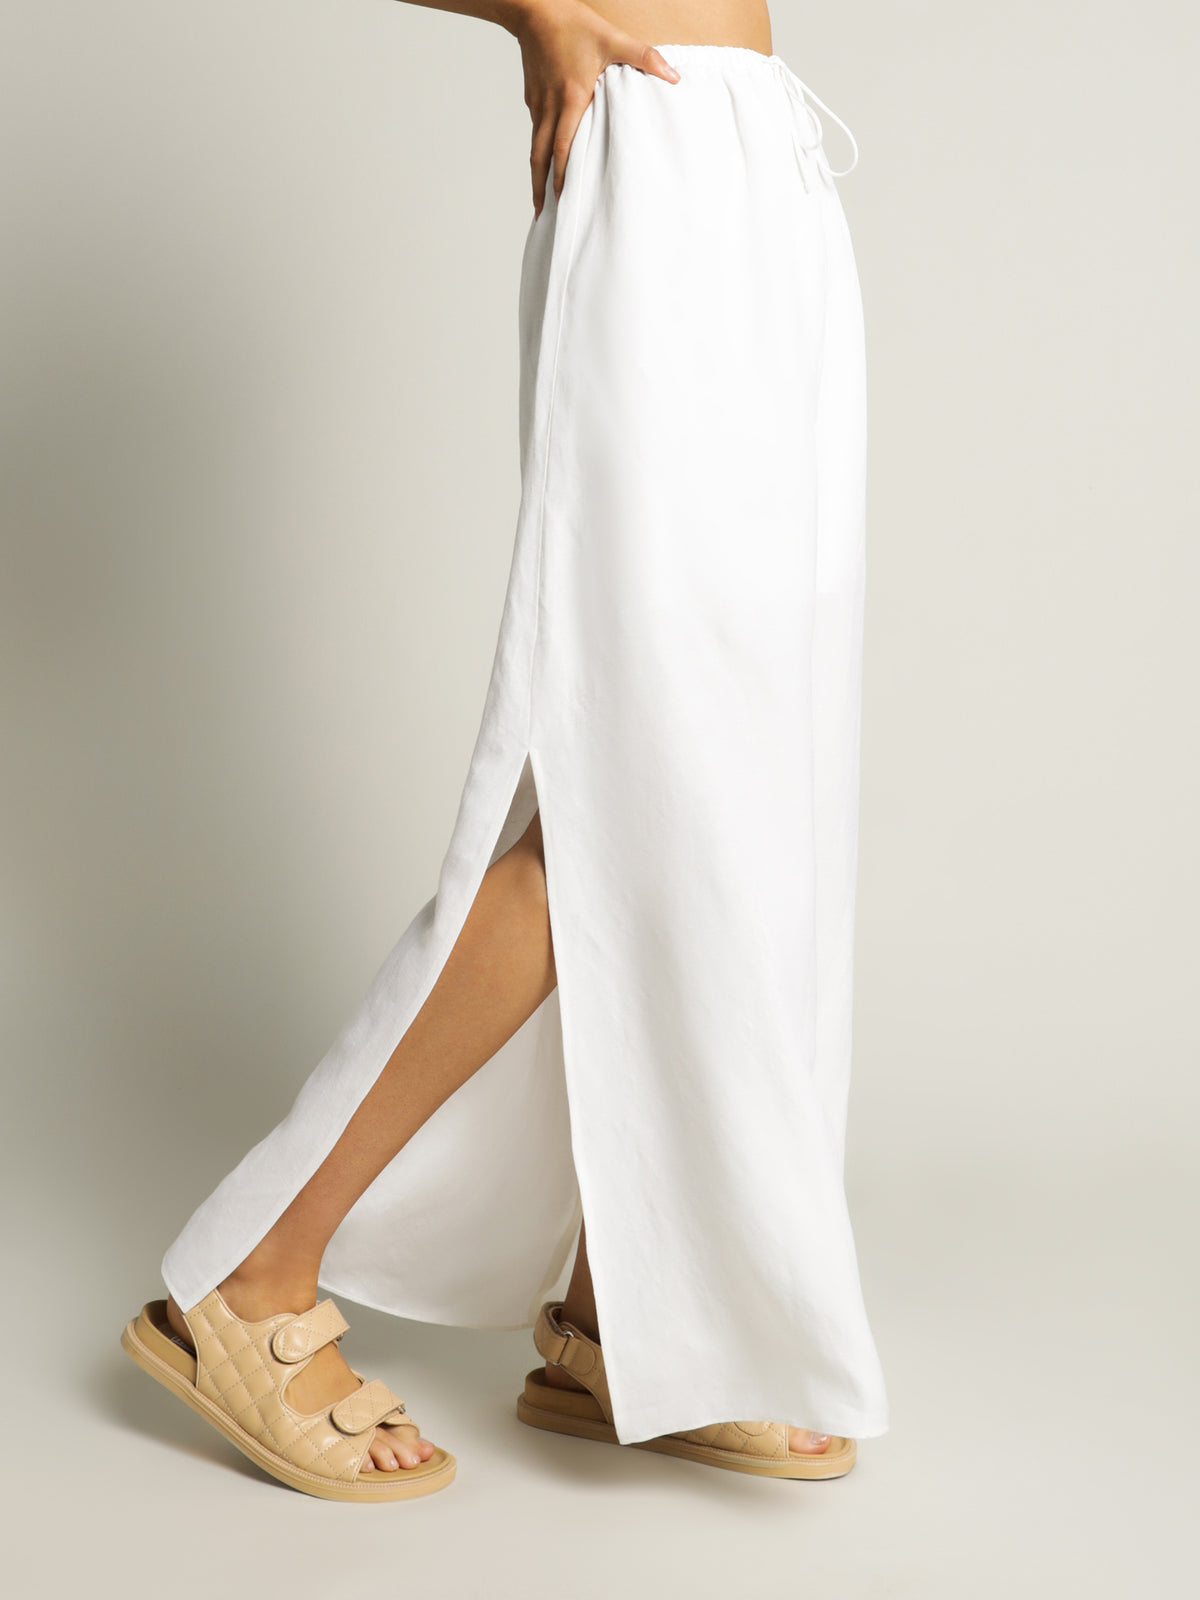 Estelle Linen Maxi Skirt in Vanilla